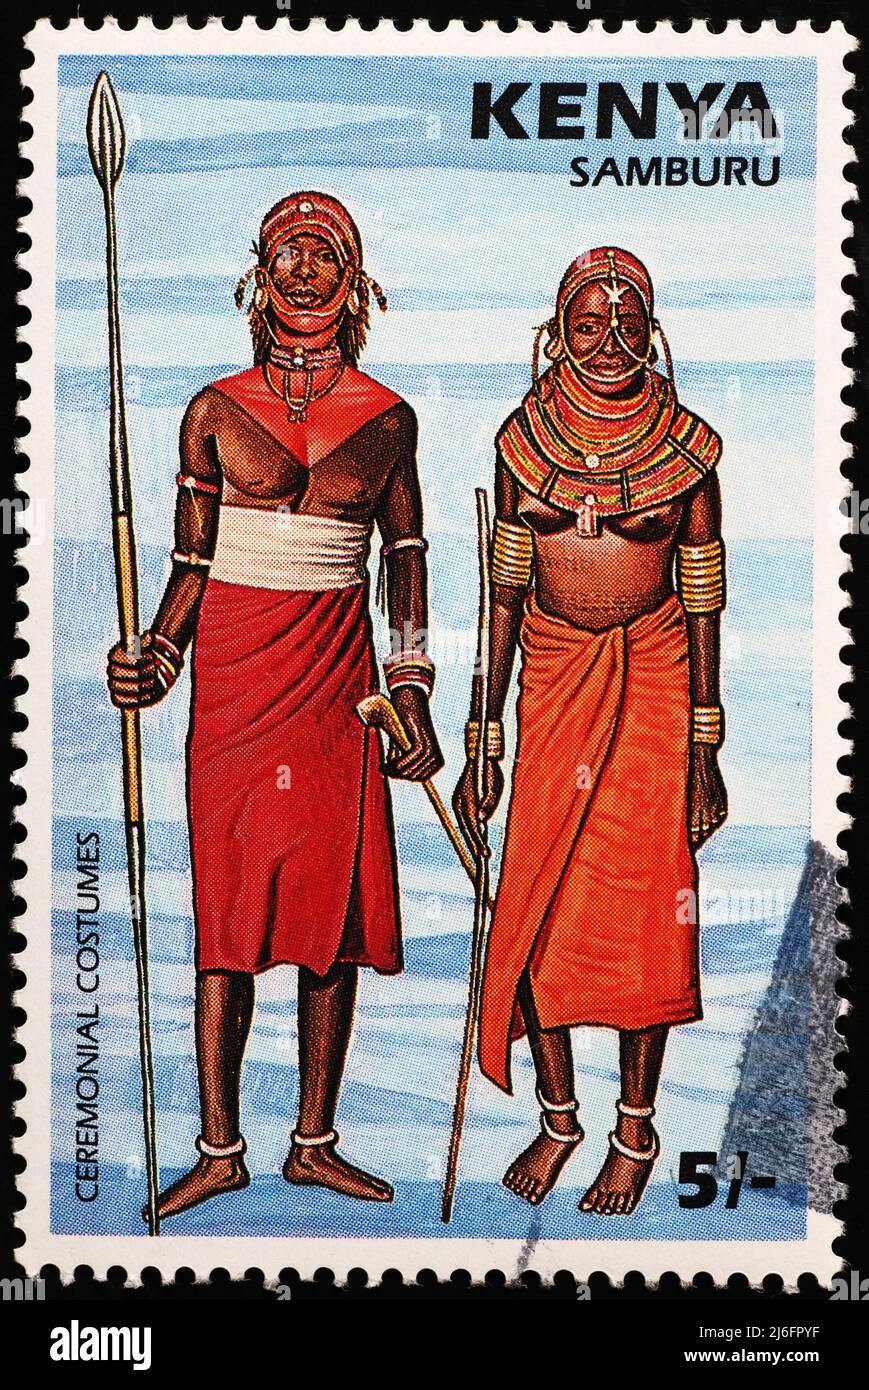 Gente de Samburu en sello postal keniano Foto de stock